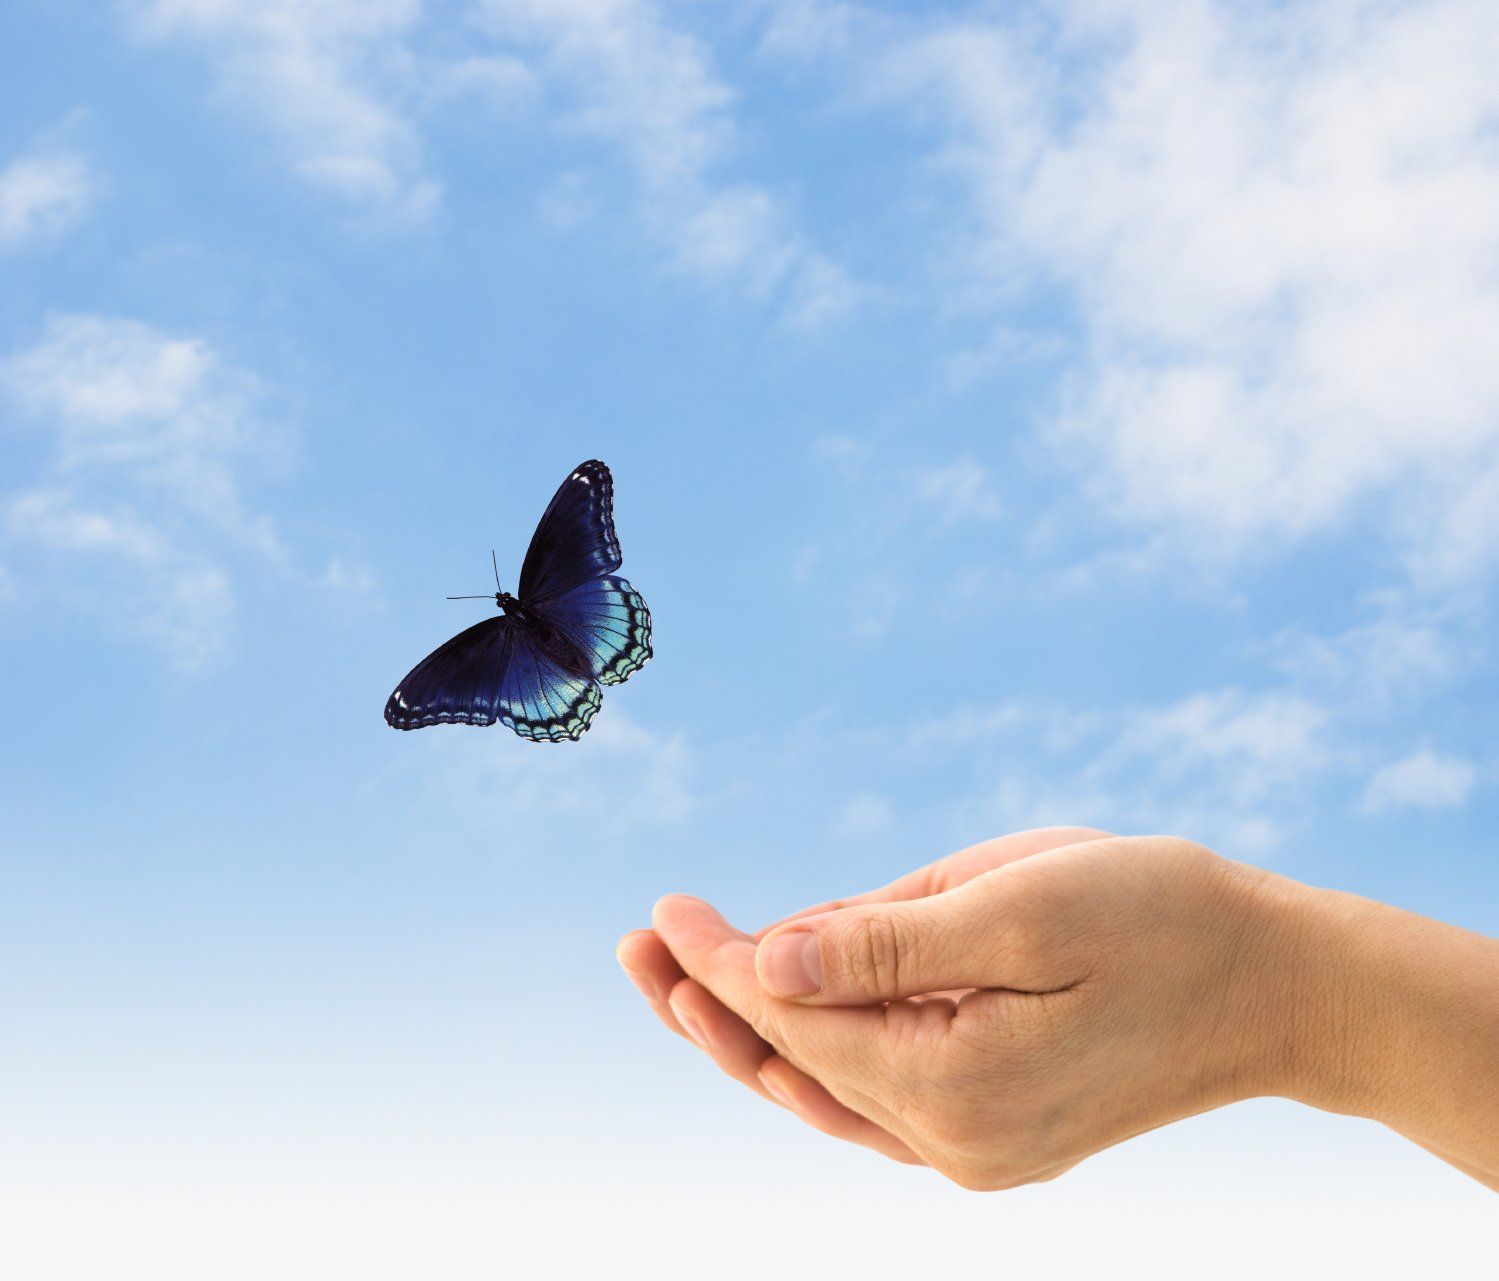 Жити будете. Бабочка на ладони. Бабочка улетает с руки. Счастье бабочки. Свобода картинки.